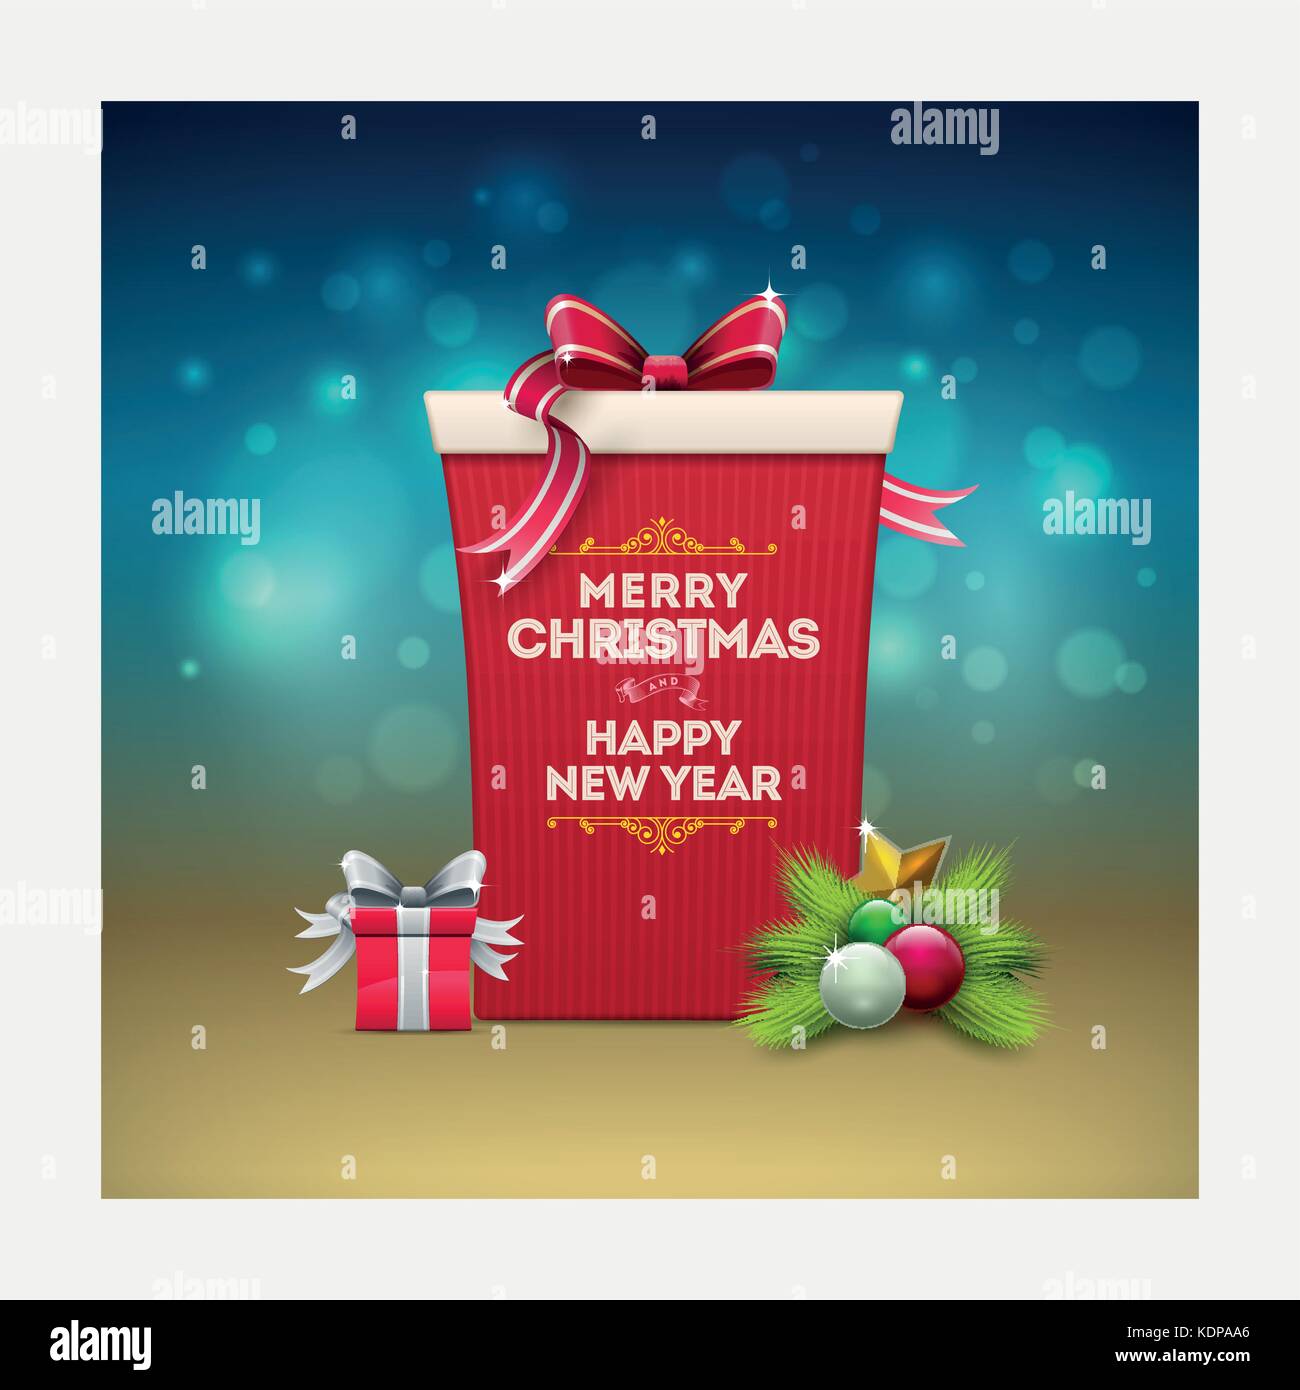 Weihnachten Geschenk box Grußkarte Design. frohe Weihnachten und ein glückliches neues Jahr Text in das Feld ein. 2-in-1-Vector Illustration. Stock Vektor